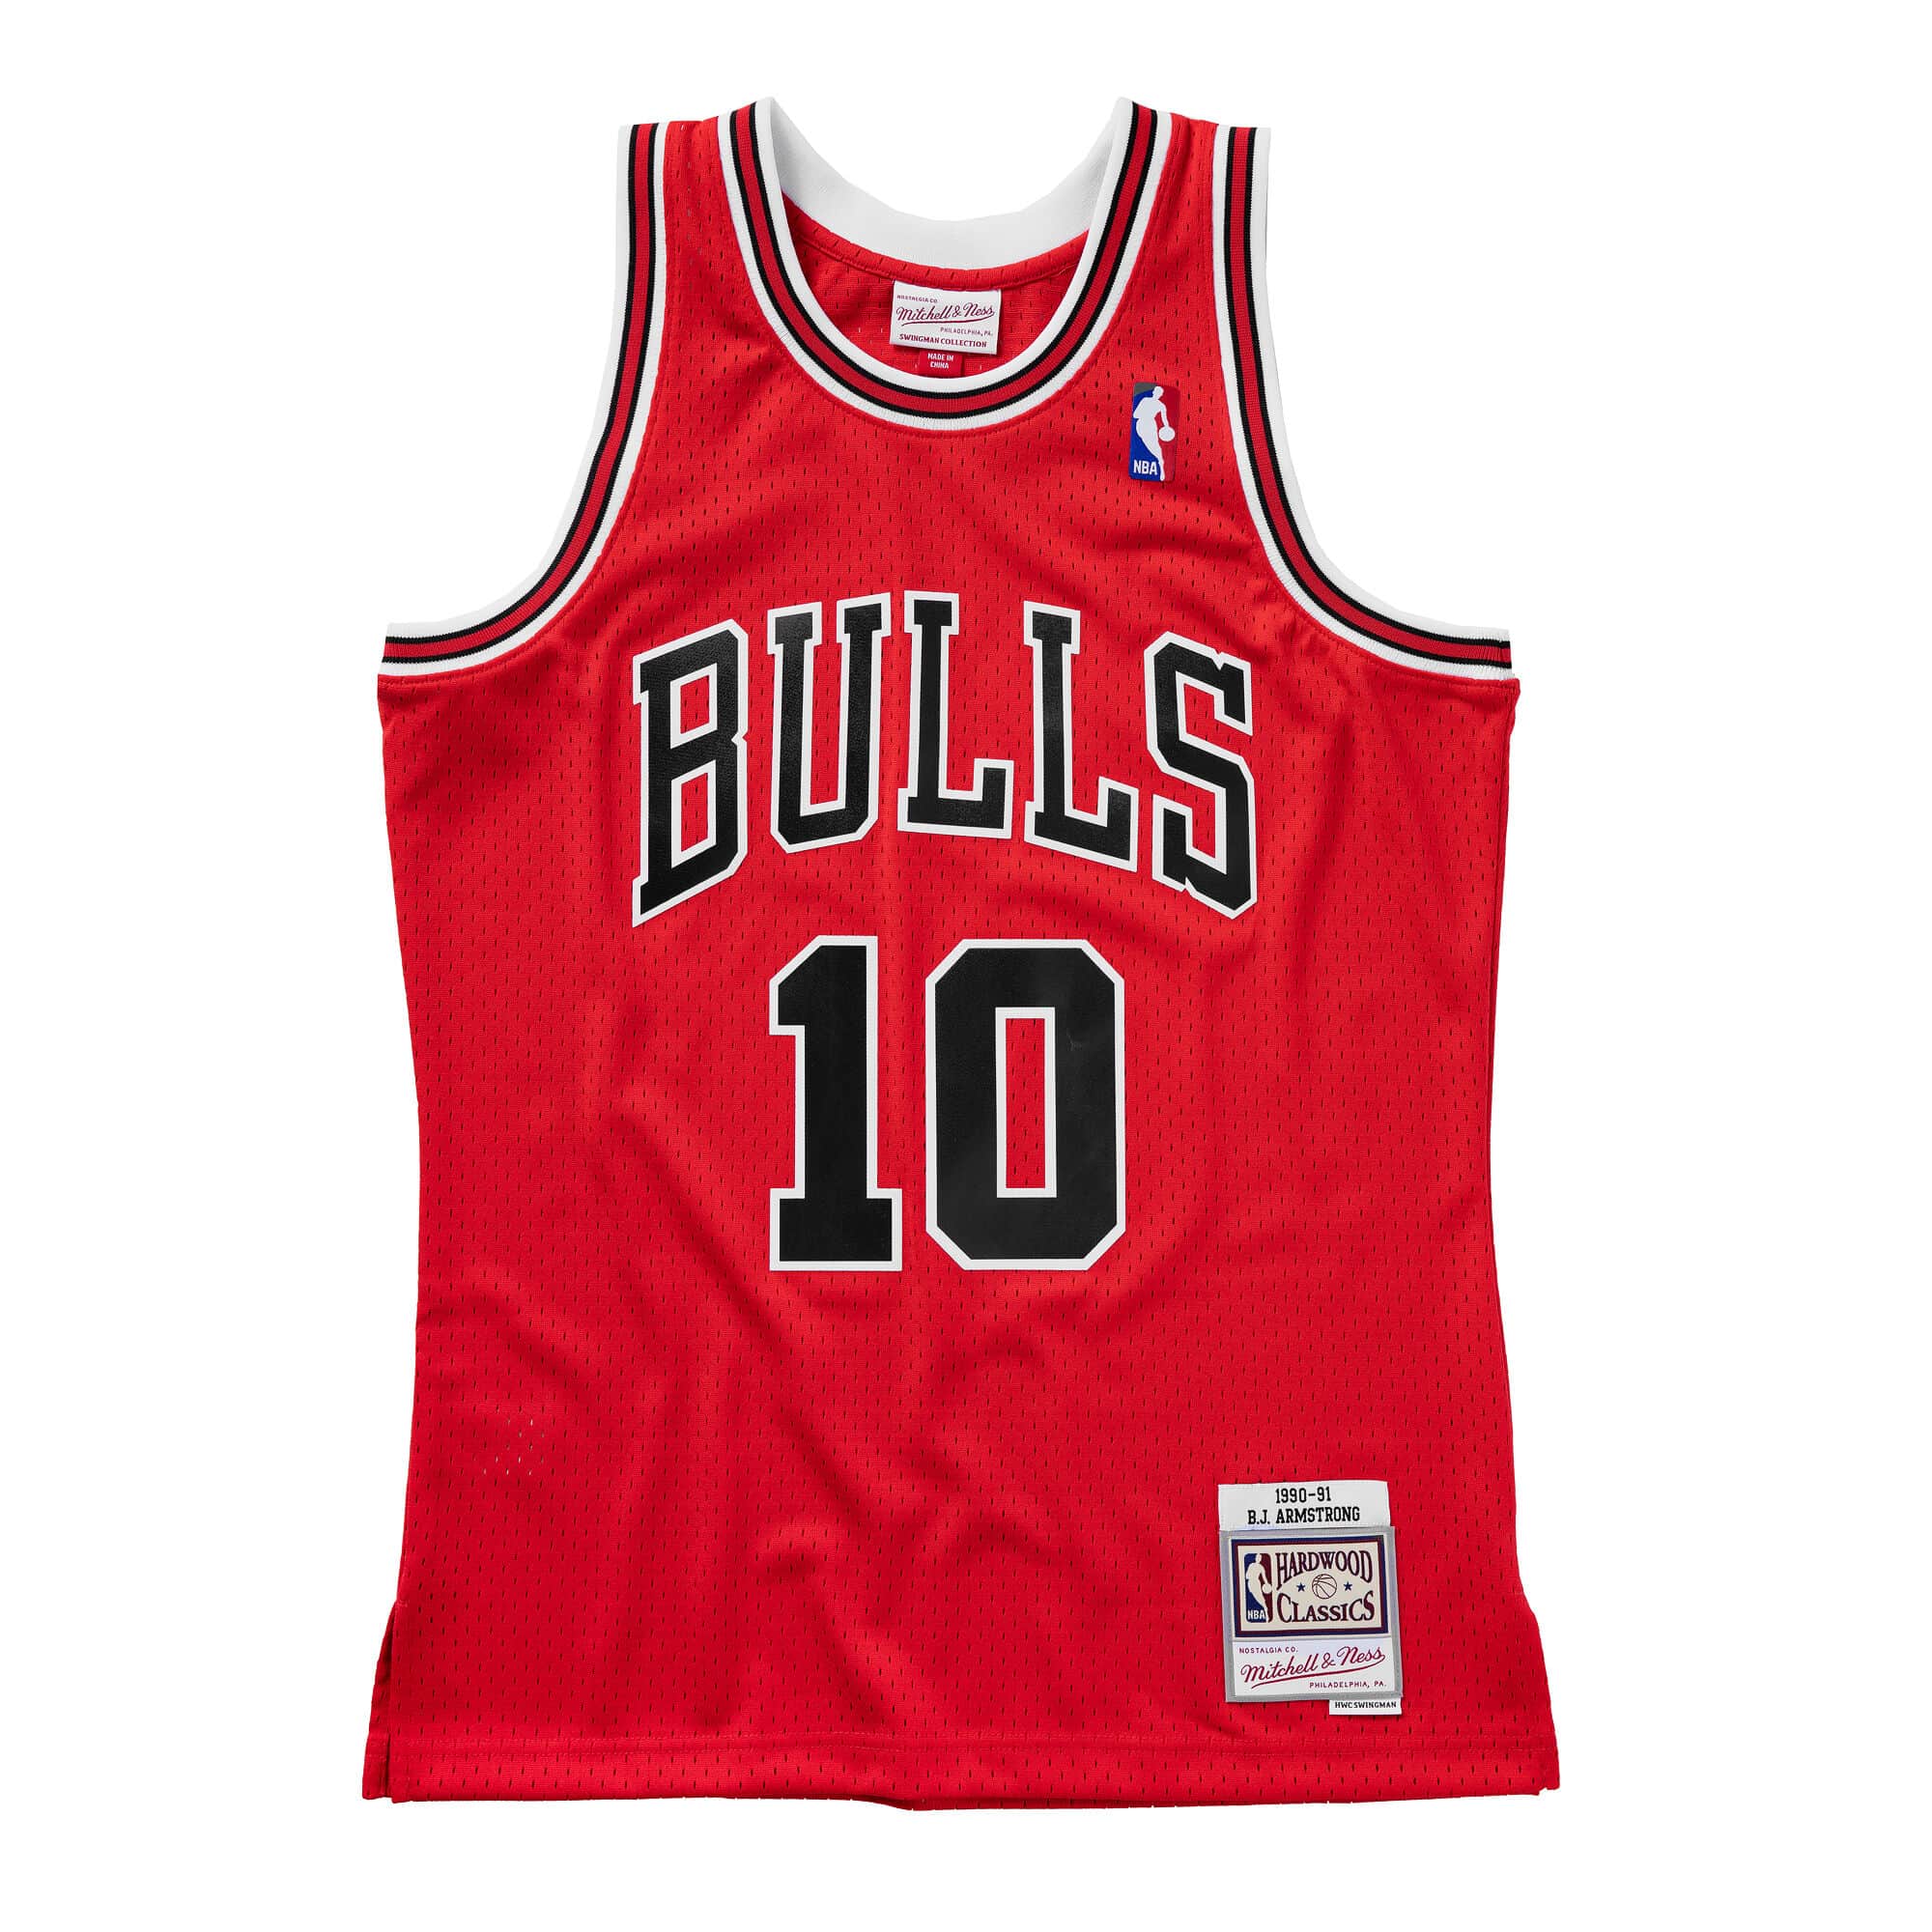 HOT Chicago Bulls 1990-91 BJ Armstrong Team Basketball Jersey Shirt ...